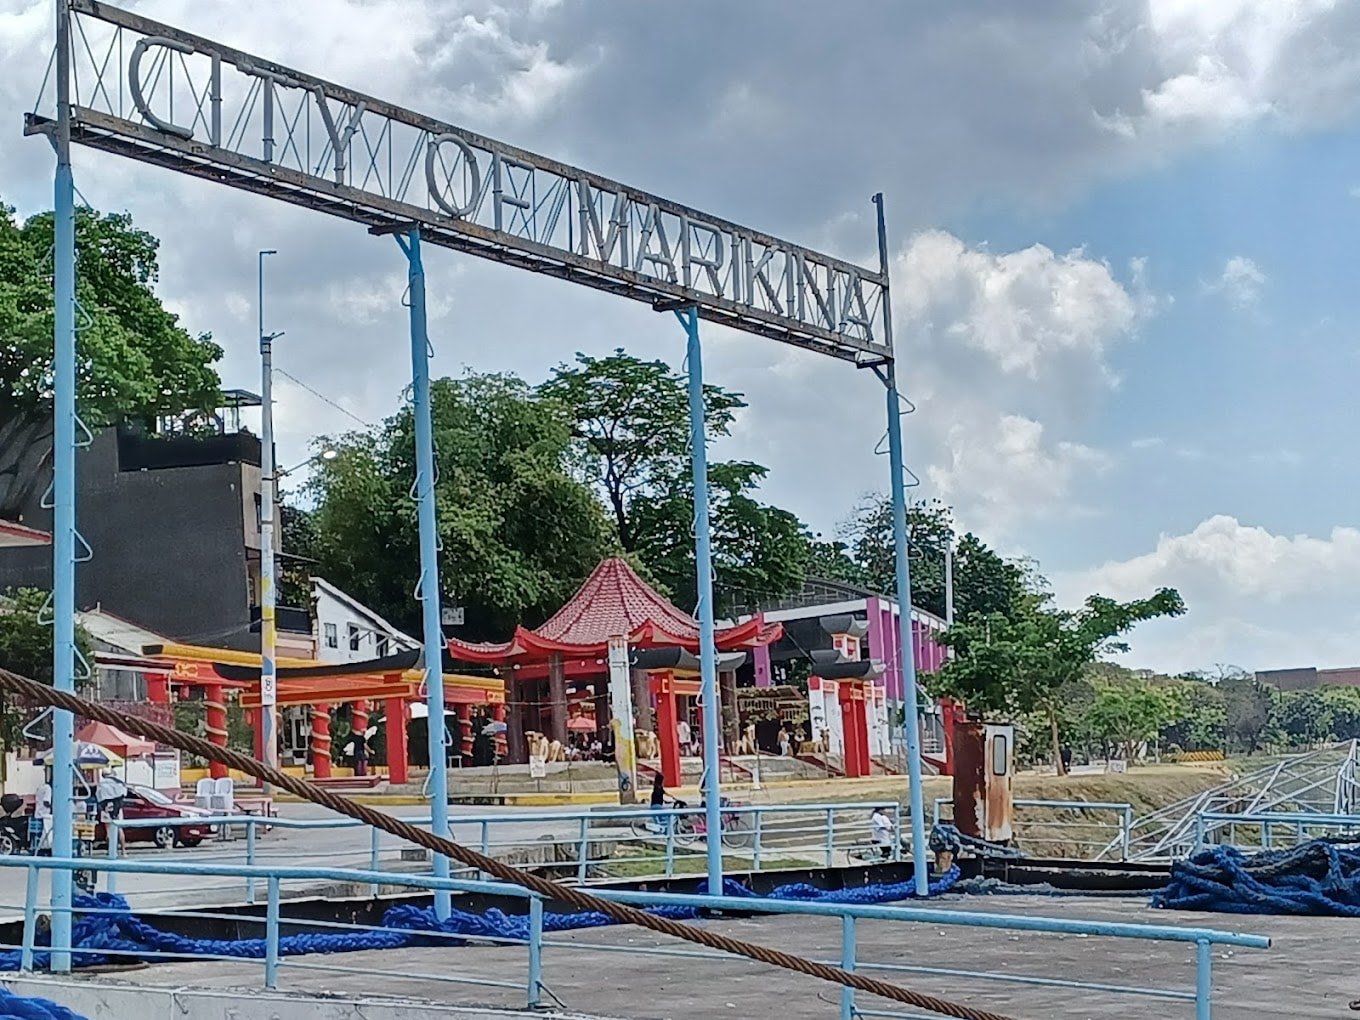 Marikina River Park's City of Marikina signboard and pagoda